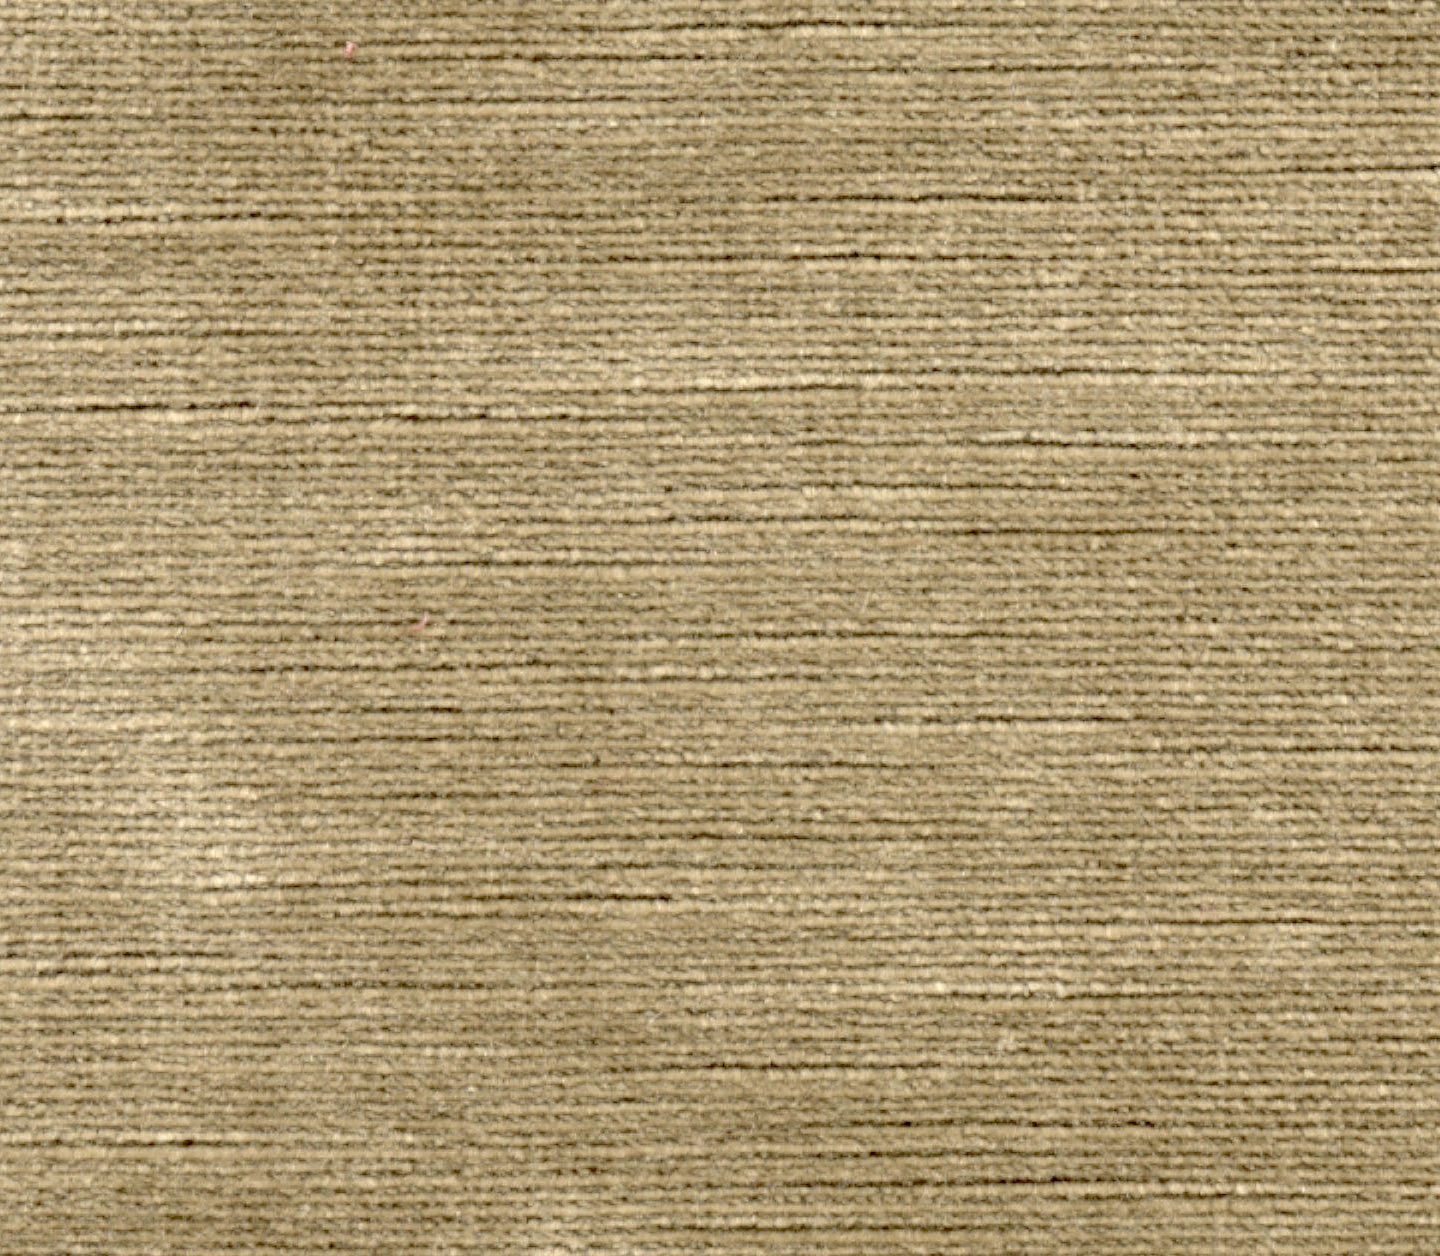 Titian - Flax